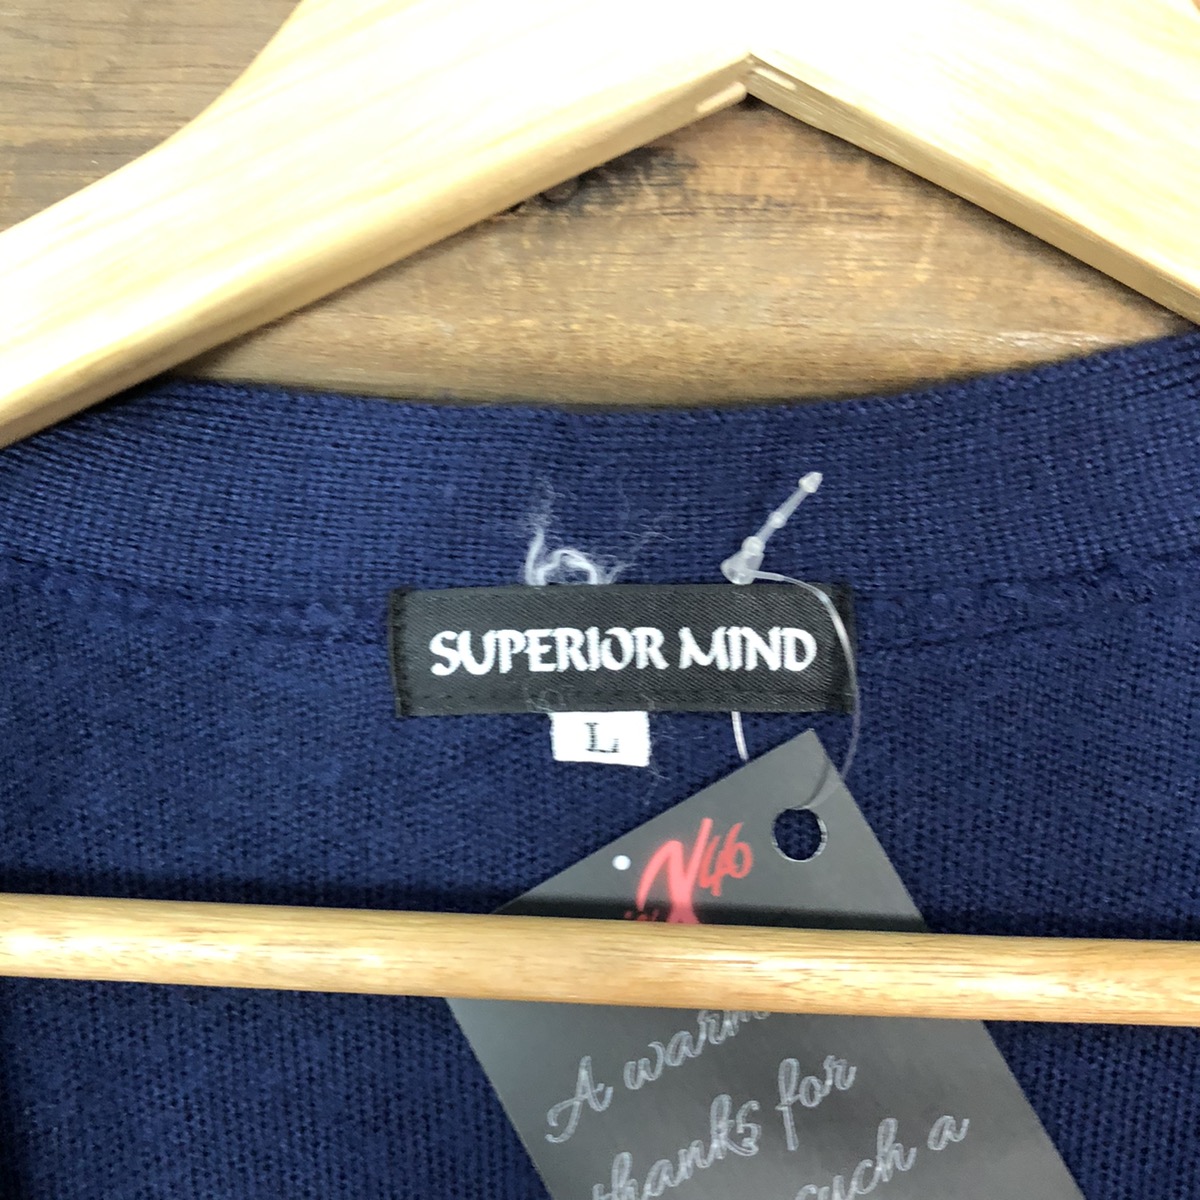 Cardigan - Superior Mind Dark blue Cardigan knitwear #5007 - 6